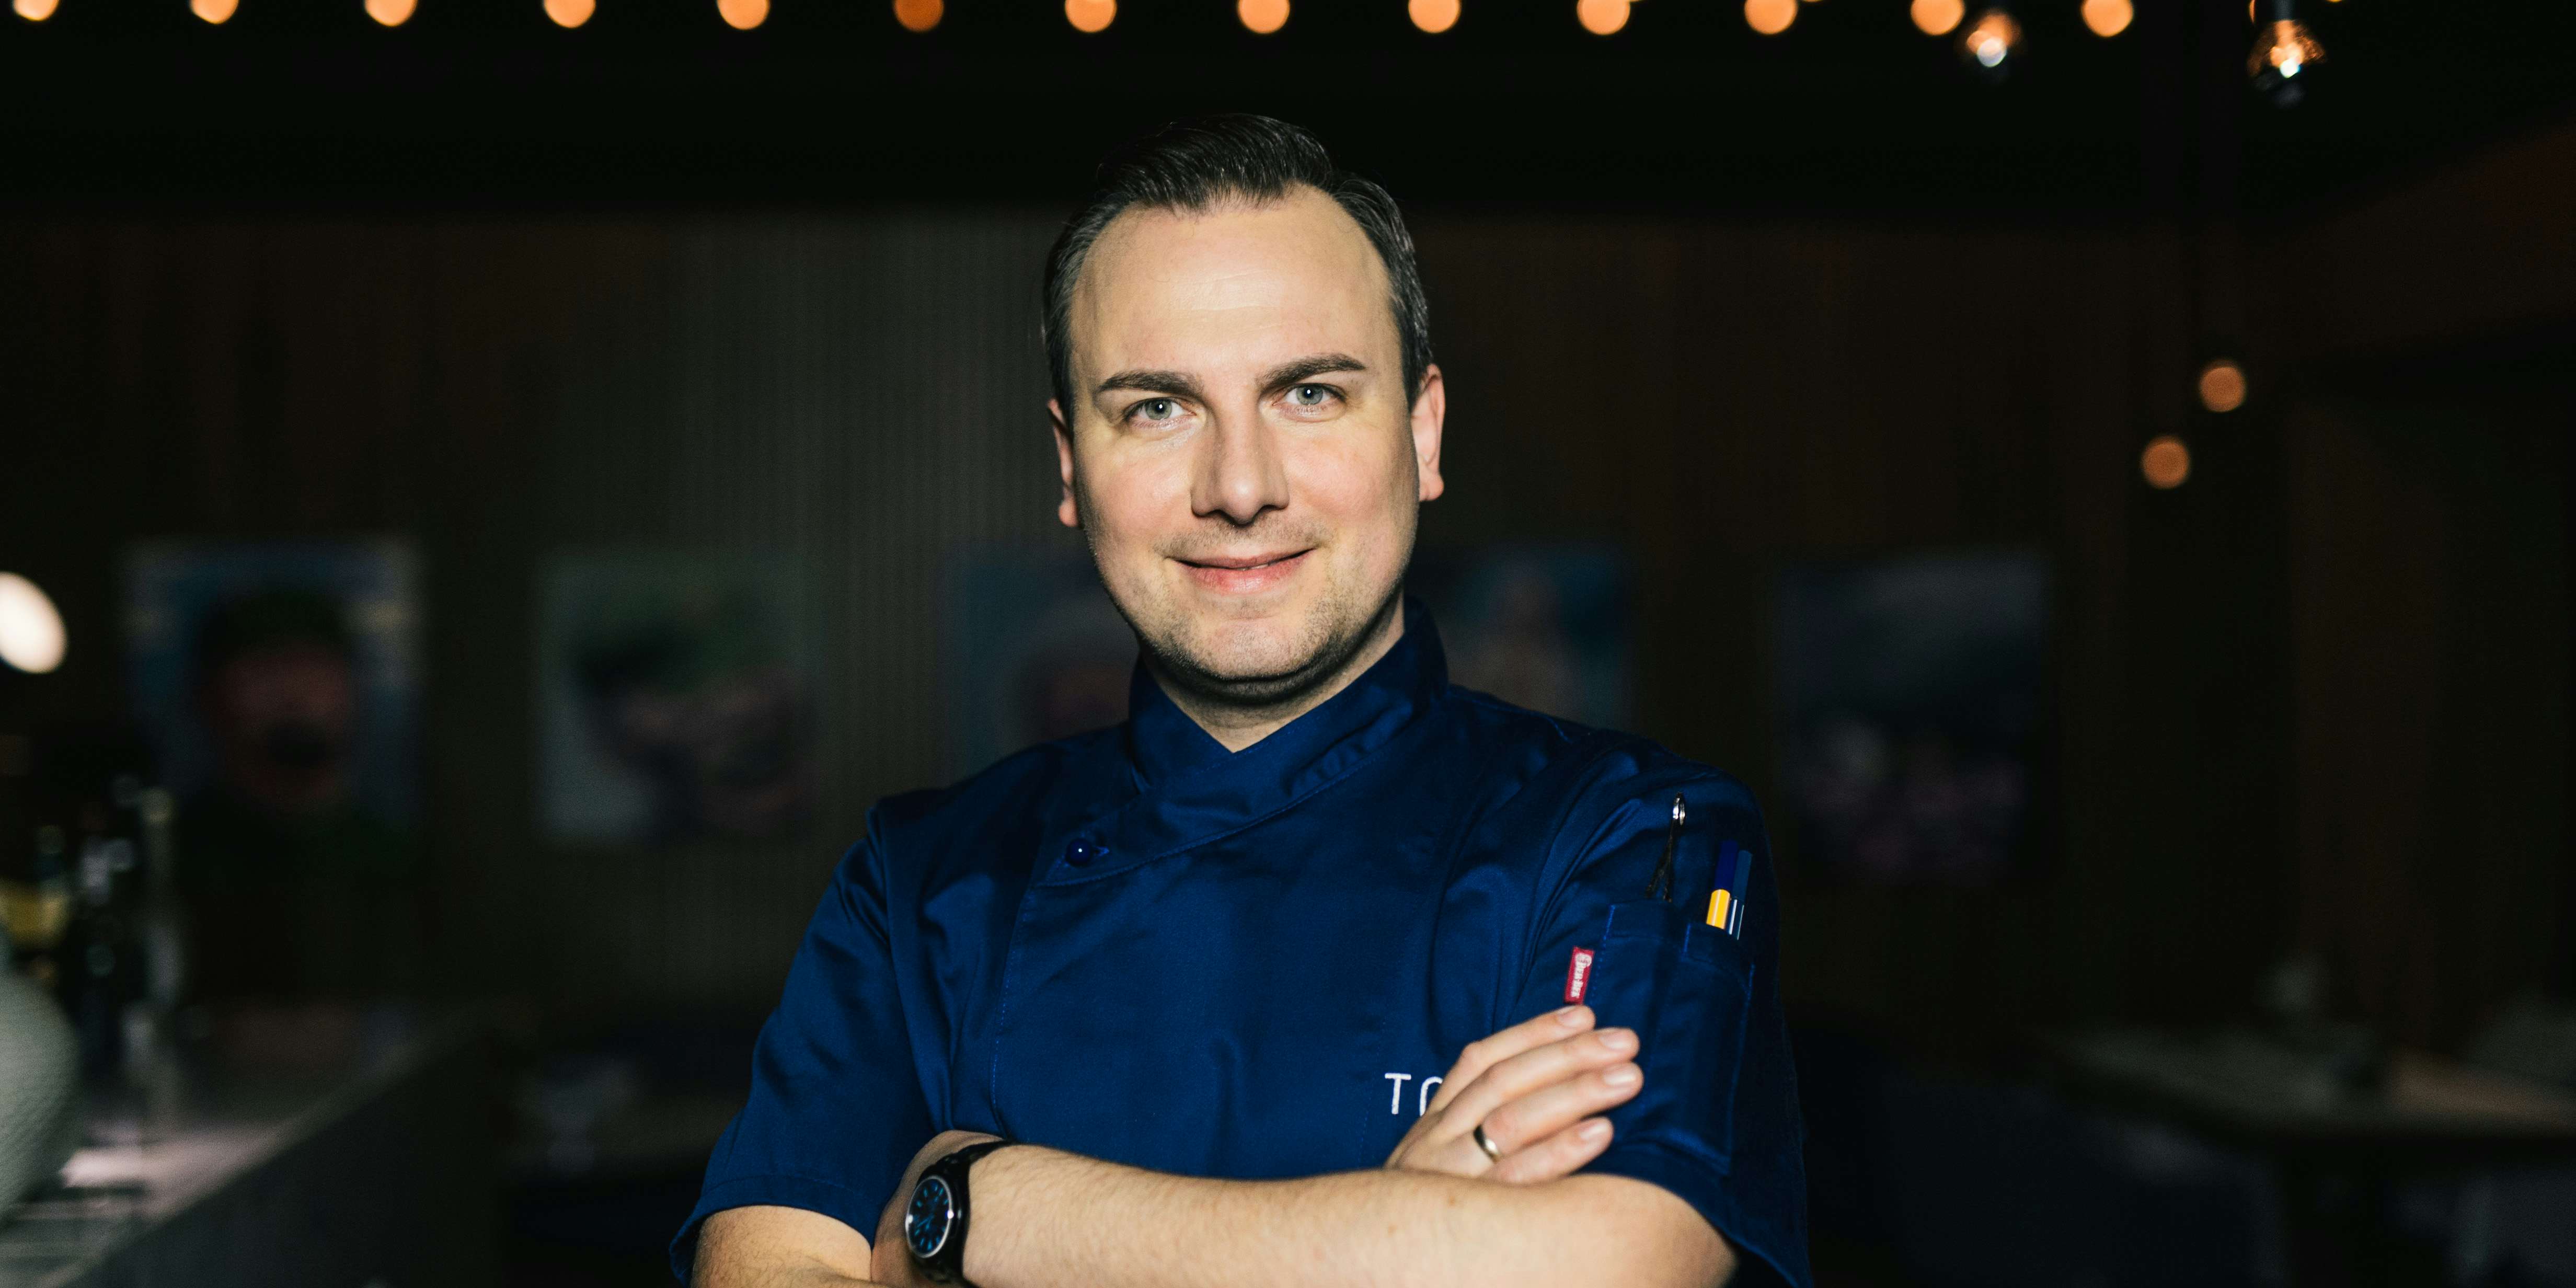 Brasserie Colette Tim Raue - unser kulinarischer Berater, der Zwei-Sterne-Koch Tim Raue